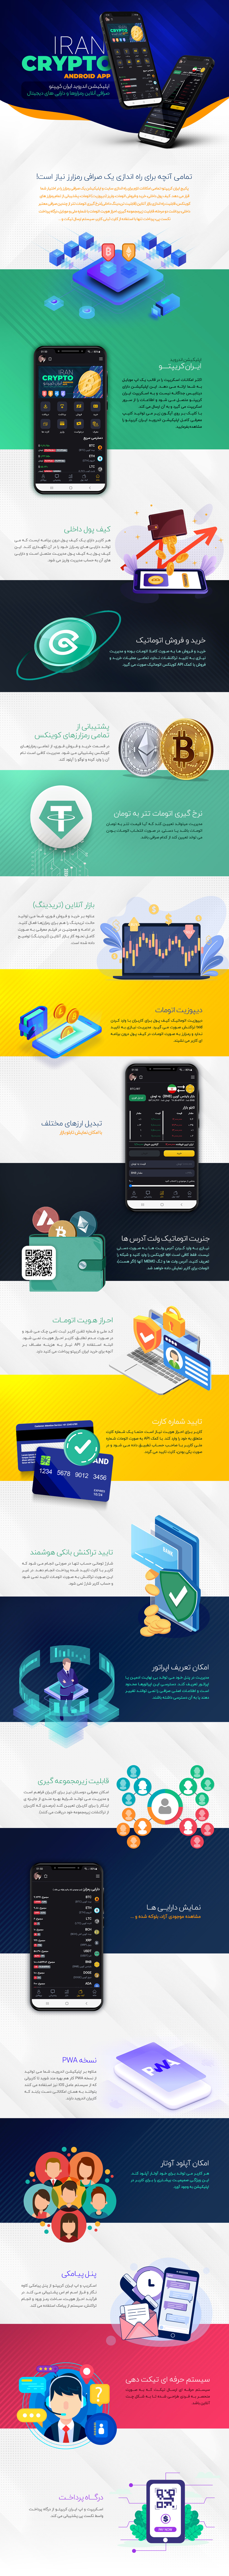 امکانات و ویژگی های اسکریپت ایران کریپتو پرو به همراه اپلیکیشن اندروید